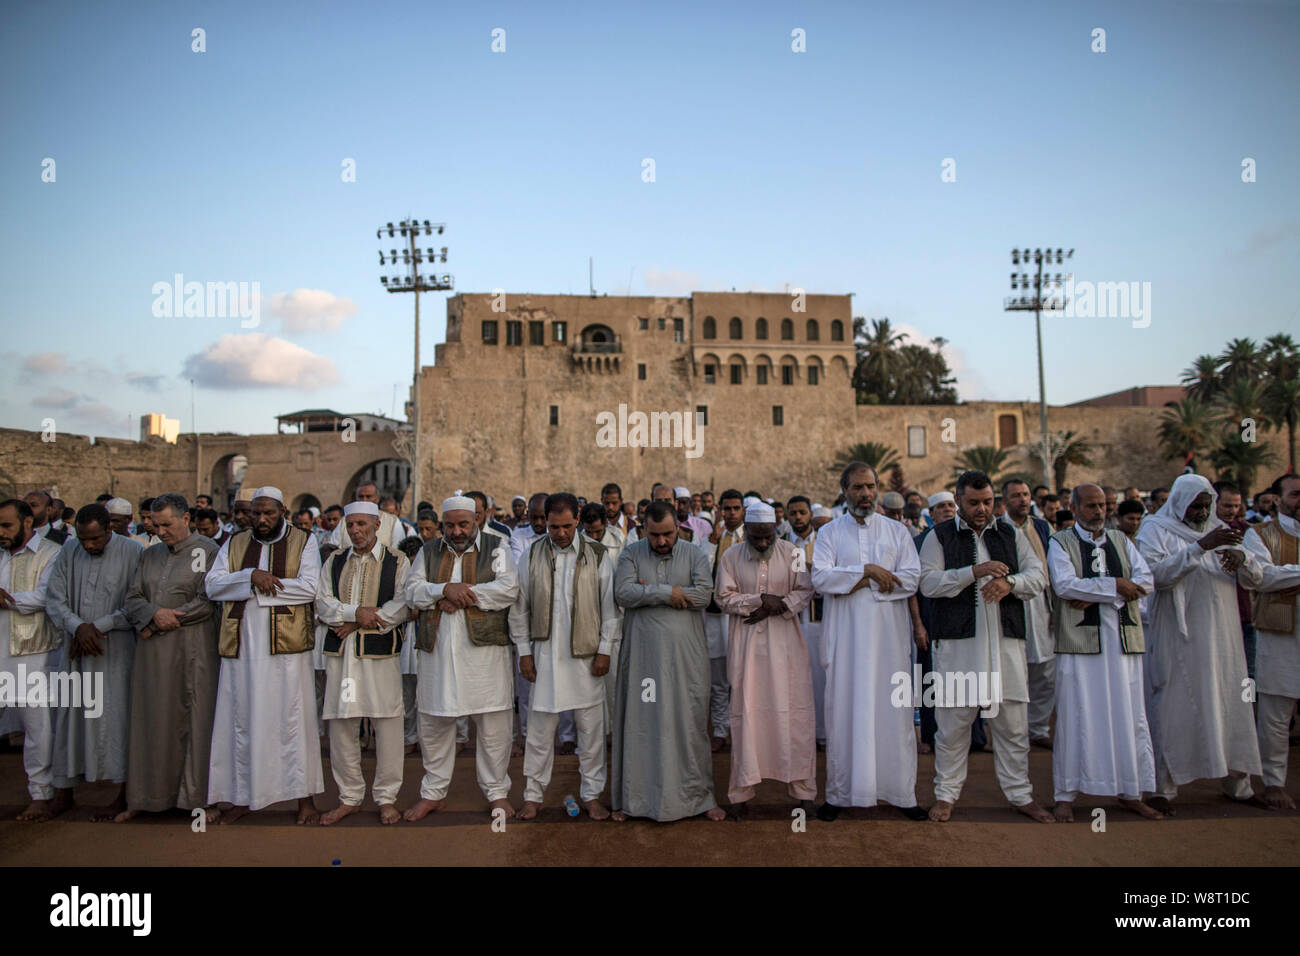 Tripoli. 11th Aug, 2019. Muslims gather for the Eid al-Adha festival in Tripoli, Libya on Aug.11, 2019. Credit: Amru Salahuddien/Xinhua Stock Photo